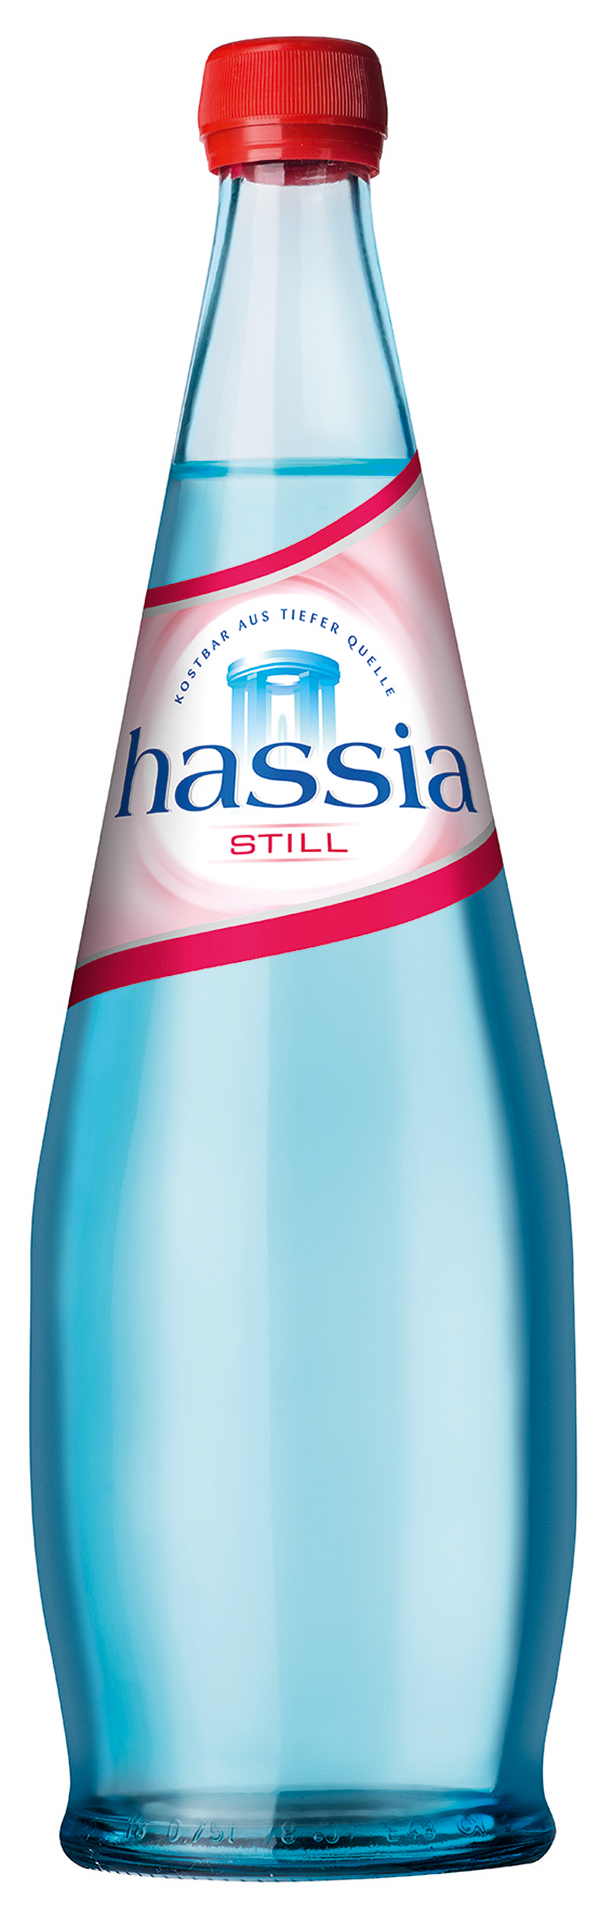 hassia Still exklusiv 12 x 0,75 l (Glas)